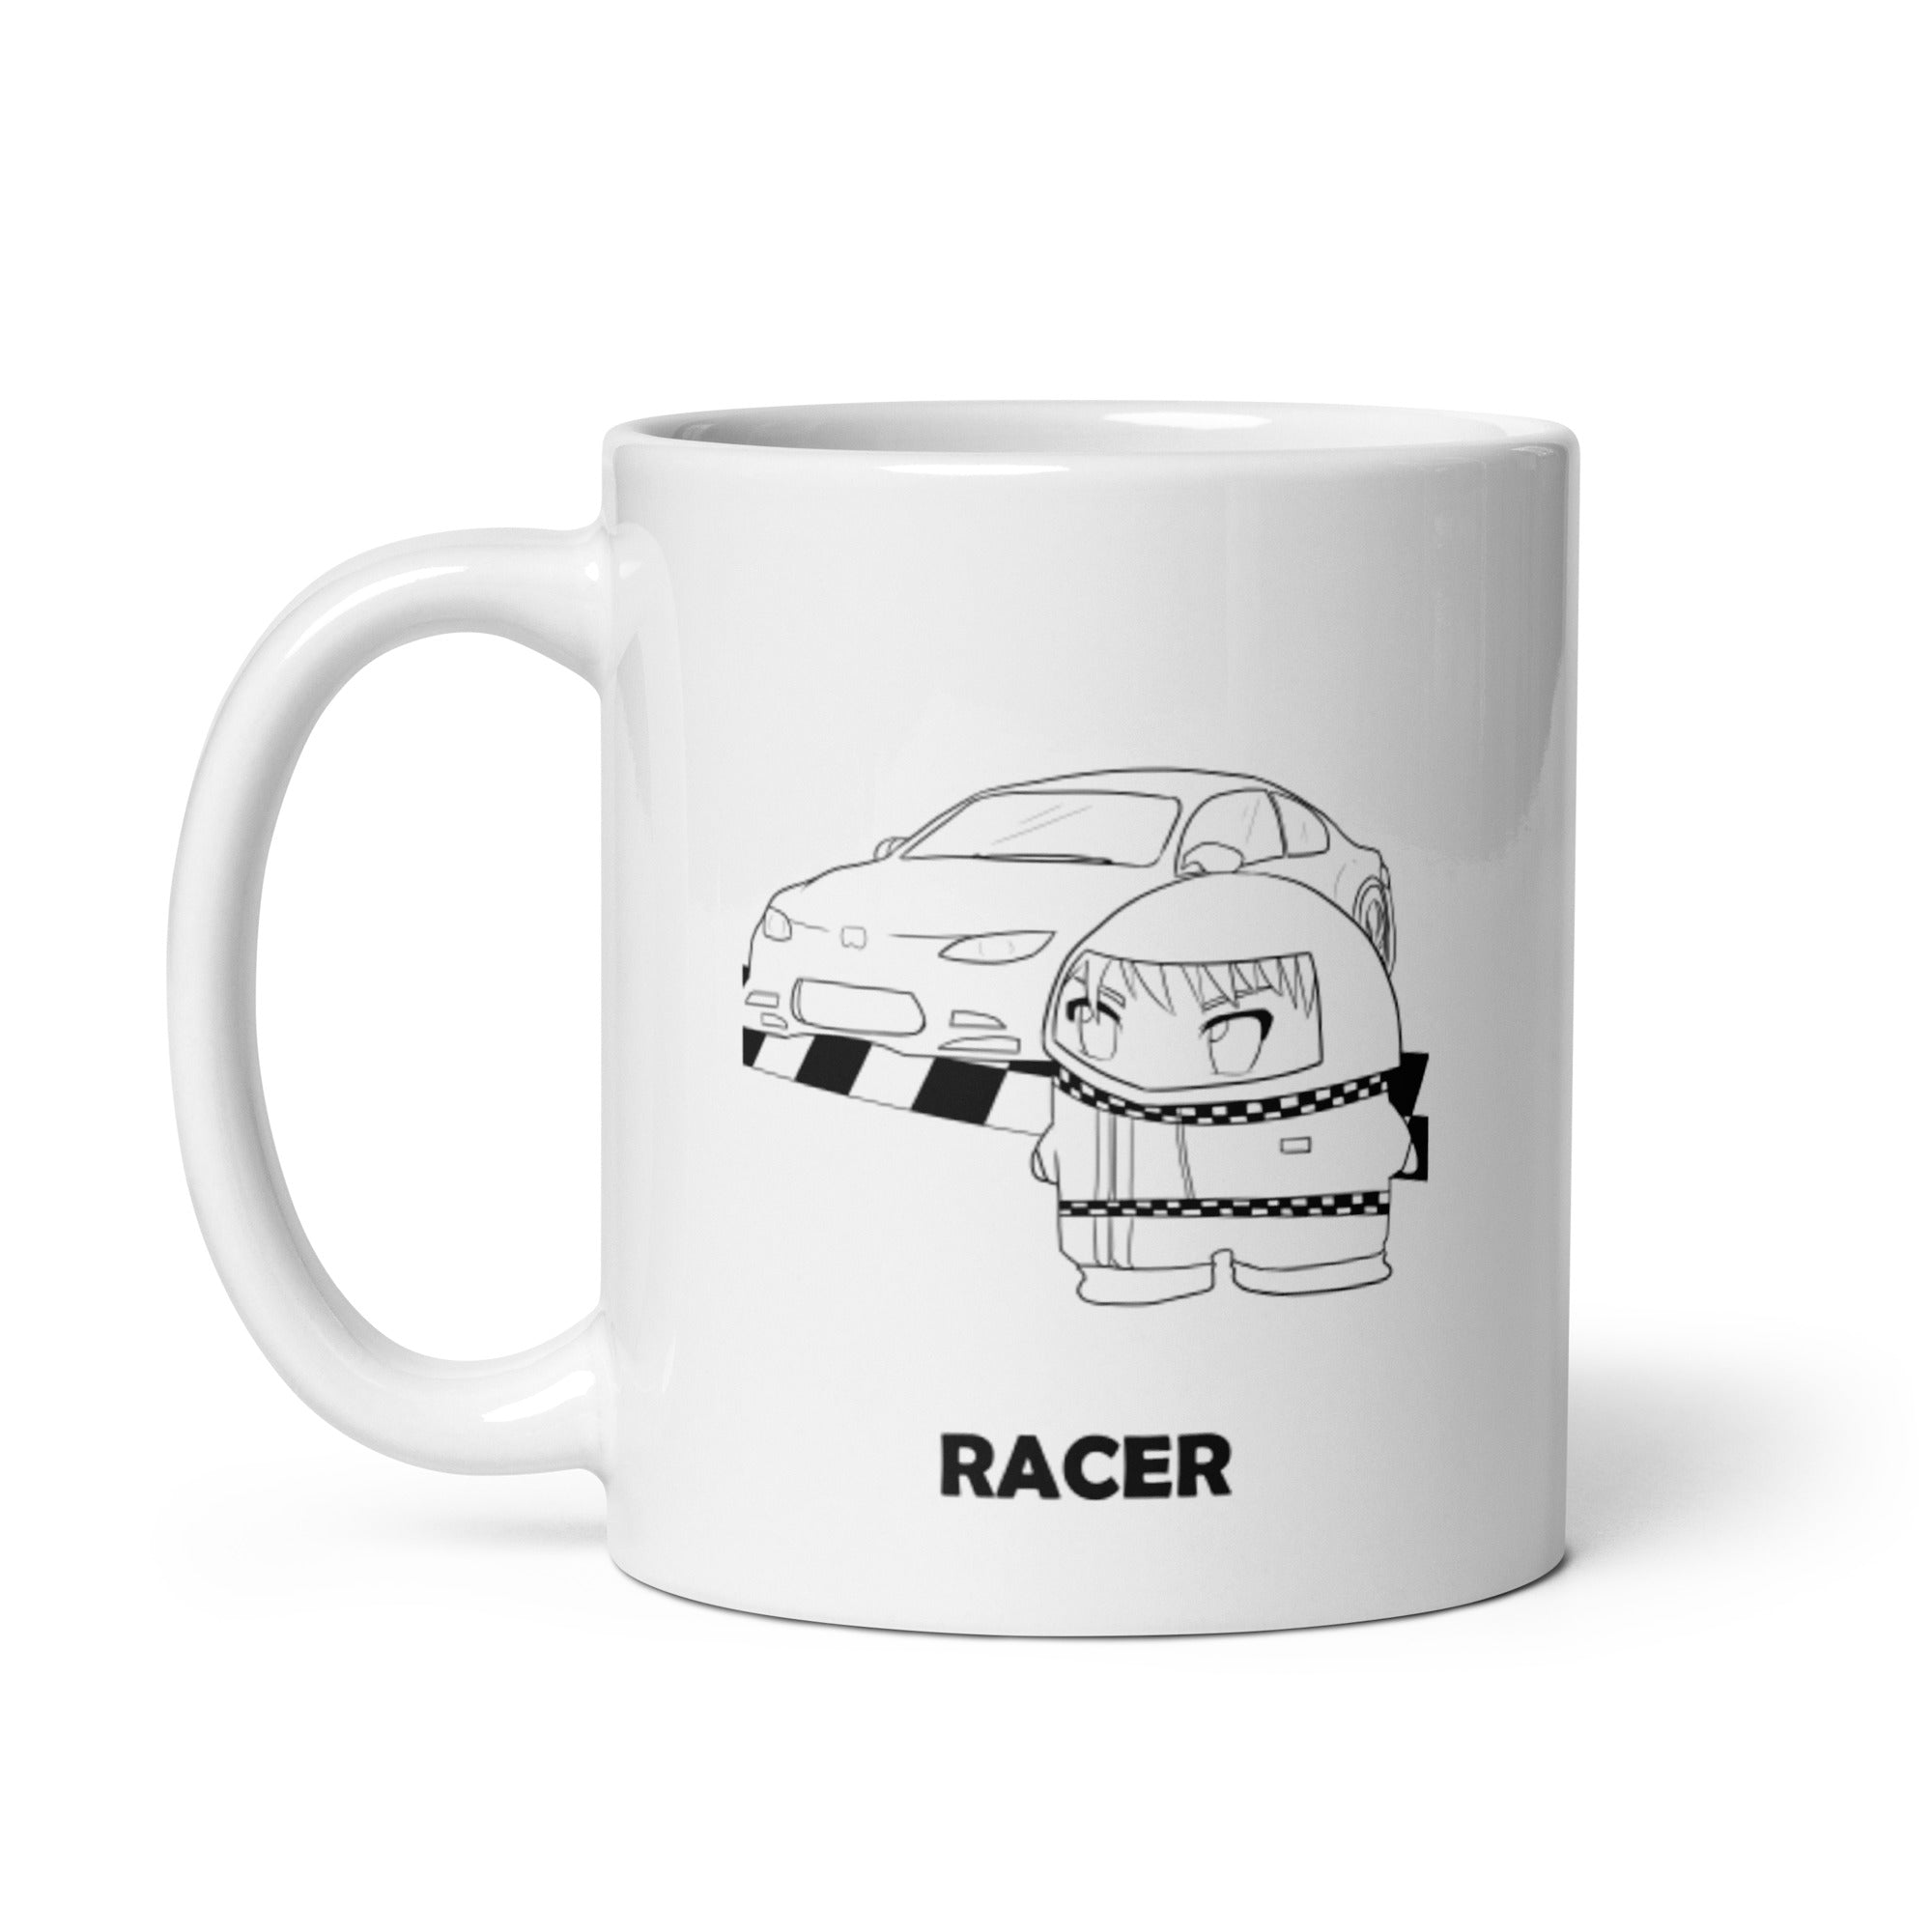 Racer| 11oz or 15oz | Funny Occupational Coffee Mug, Humorous Quote Coffee Mug, Tea Mug